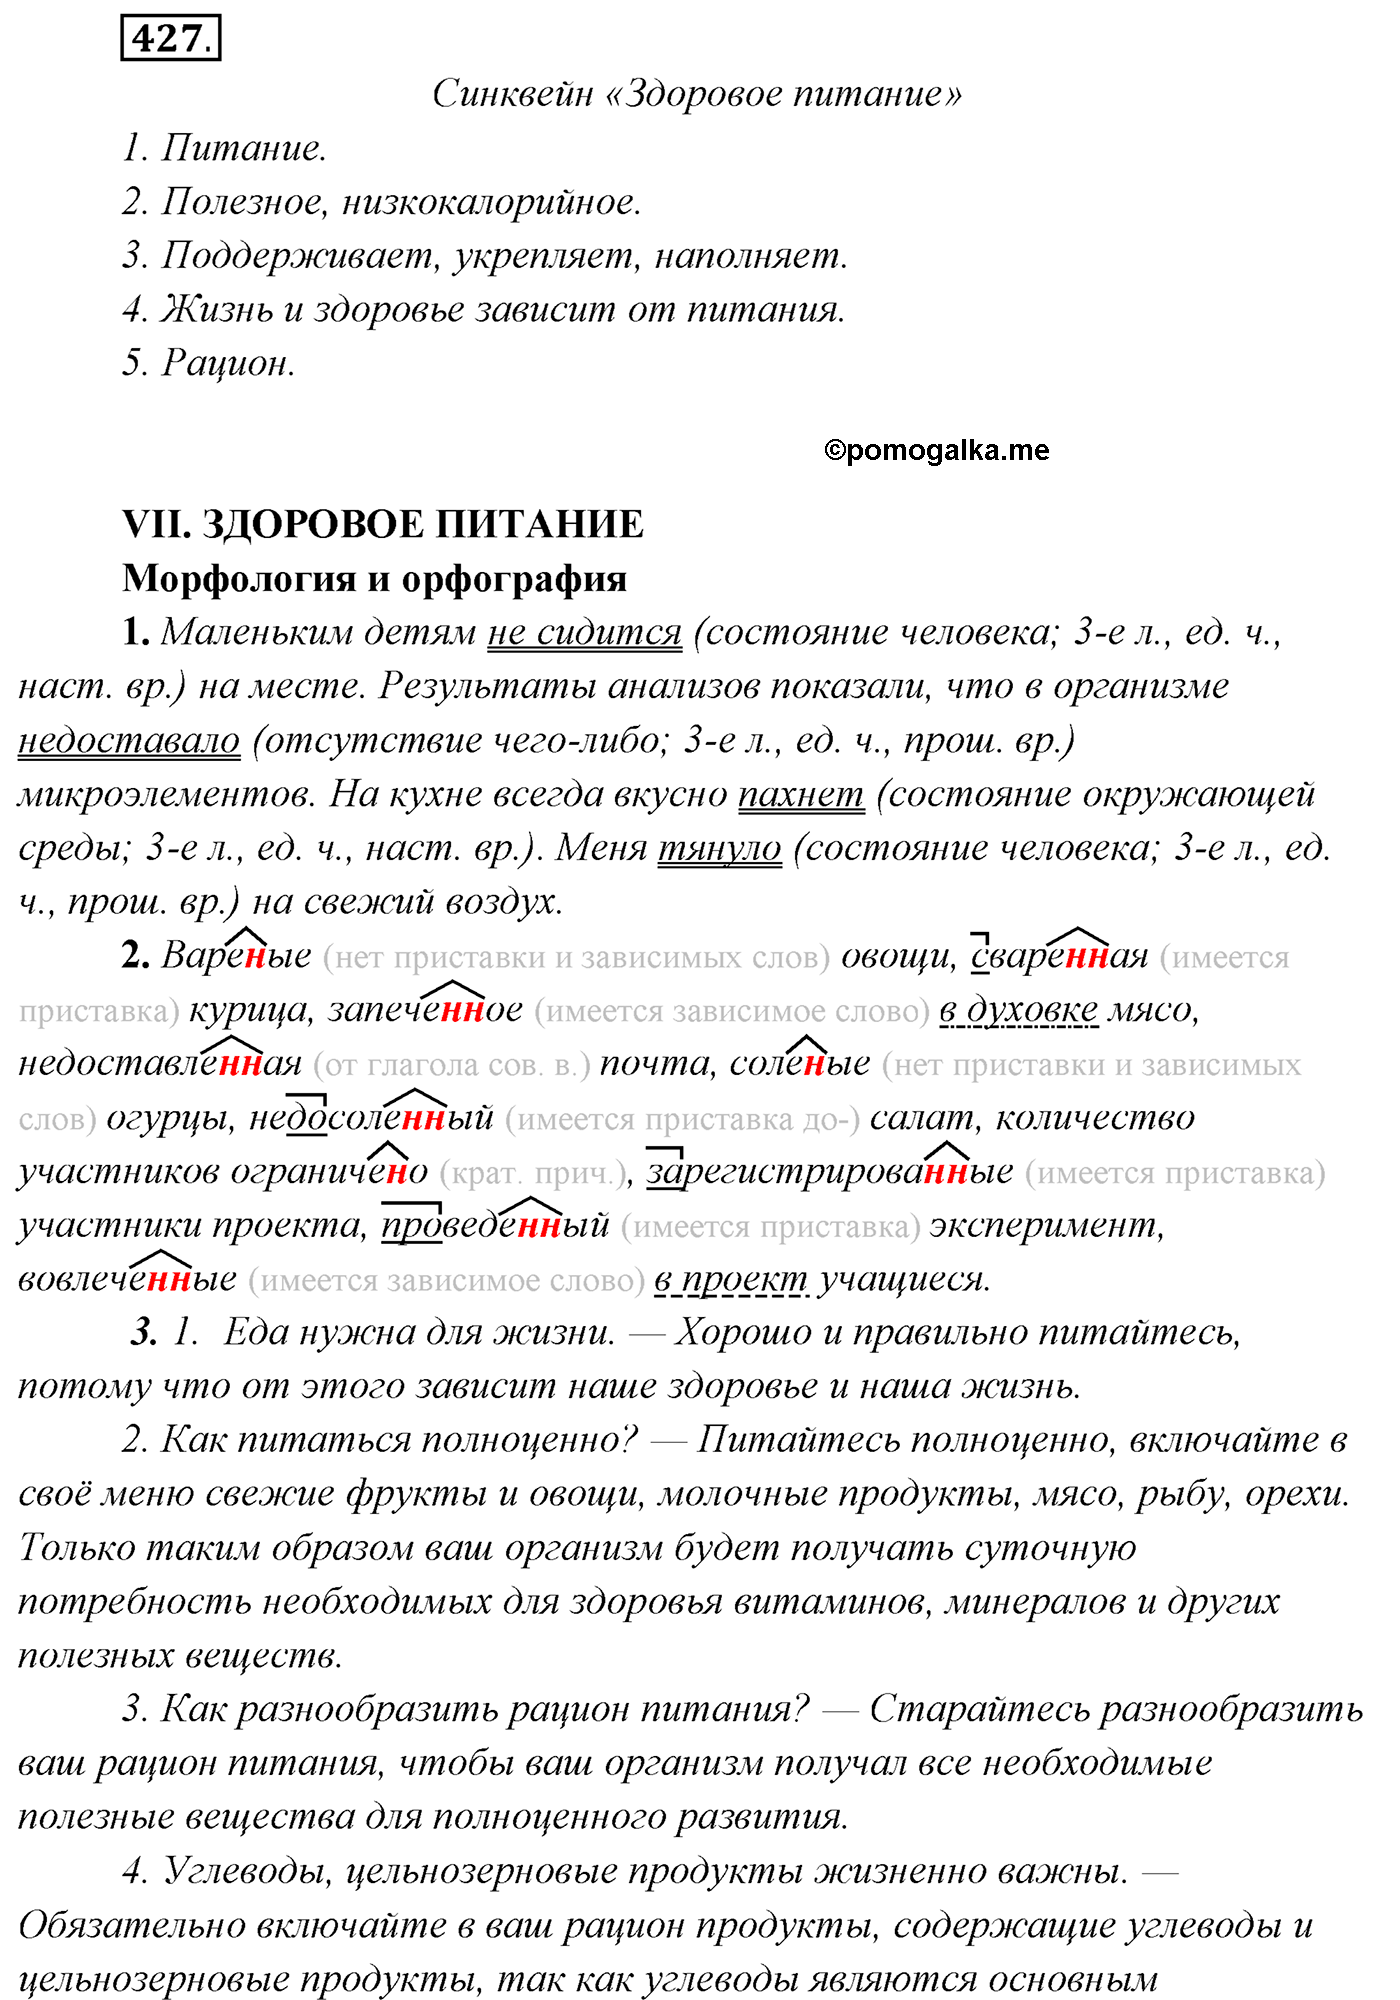 упражнение №427 русский язык 7 класс Сабитова, Скляренко